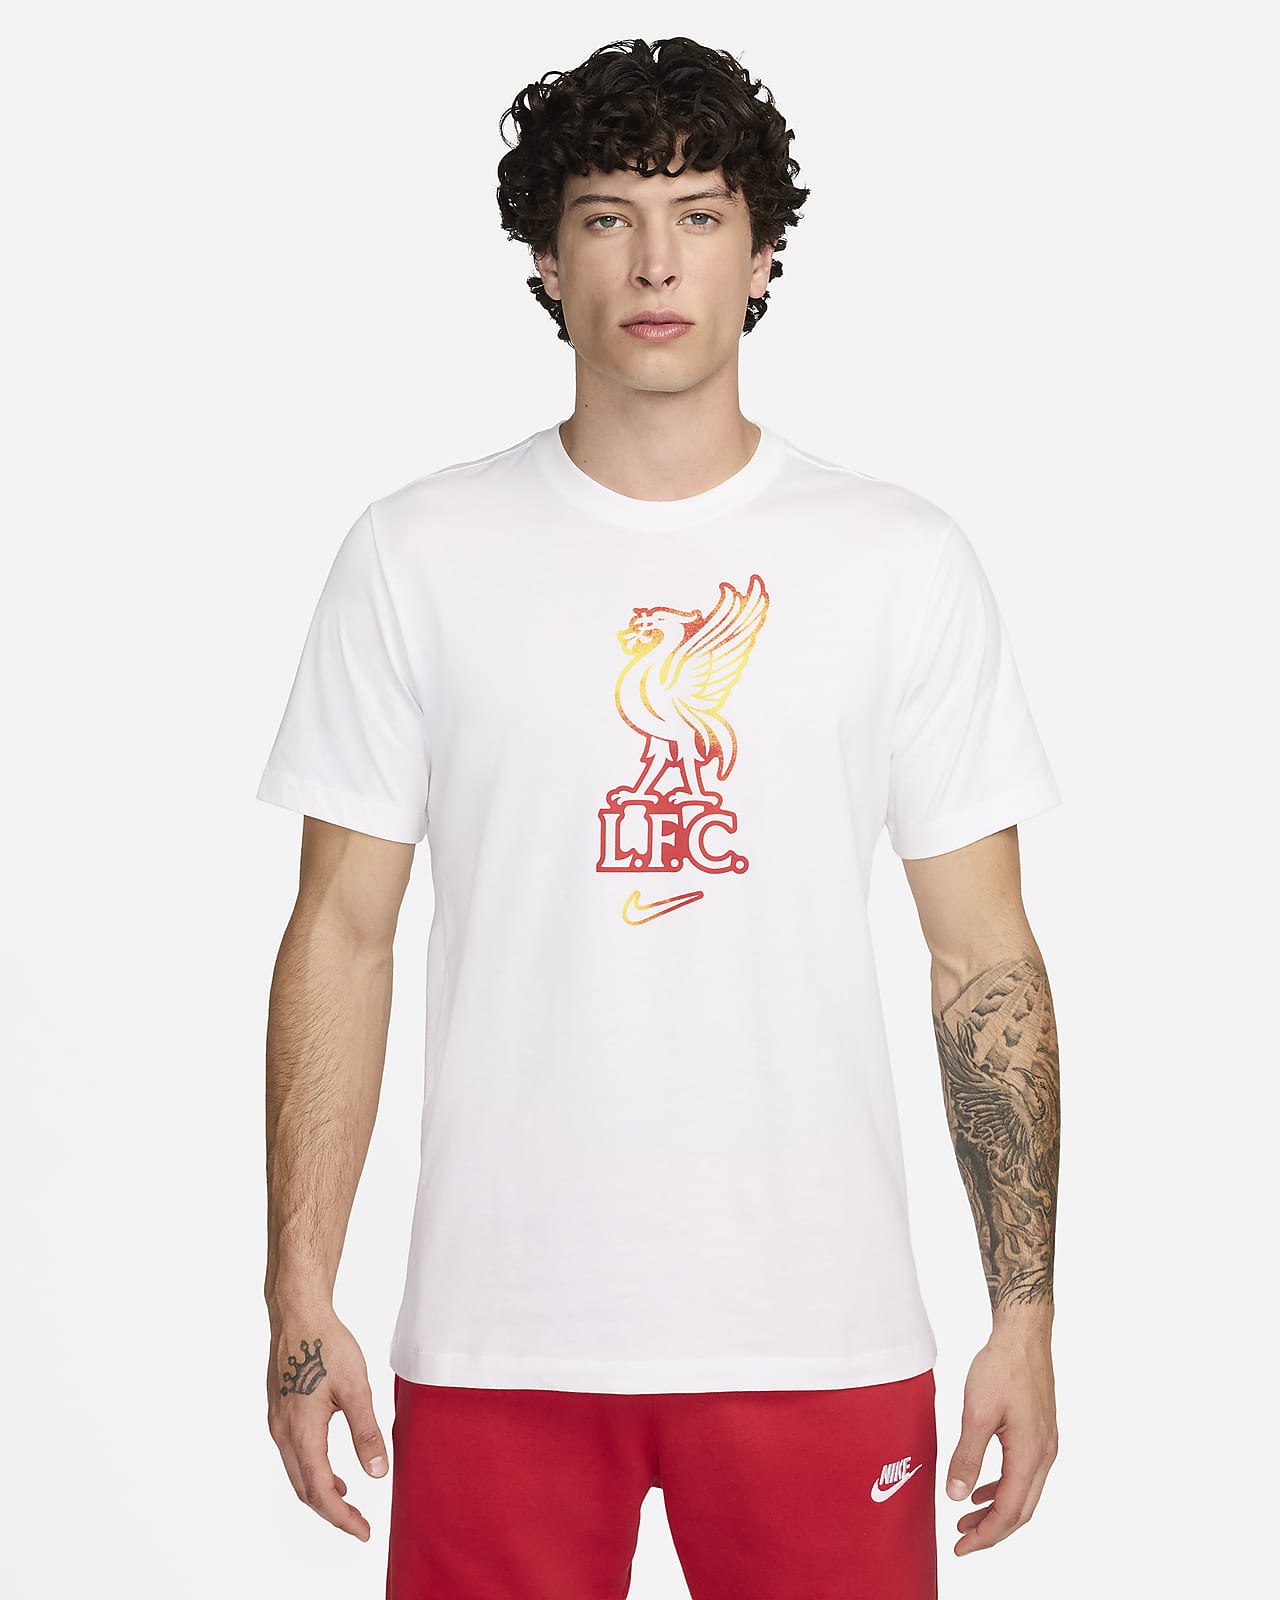 Ανδρικό ποδοσφαιρικό T-Shirt Nike Λίβερπουλ